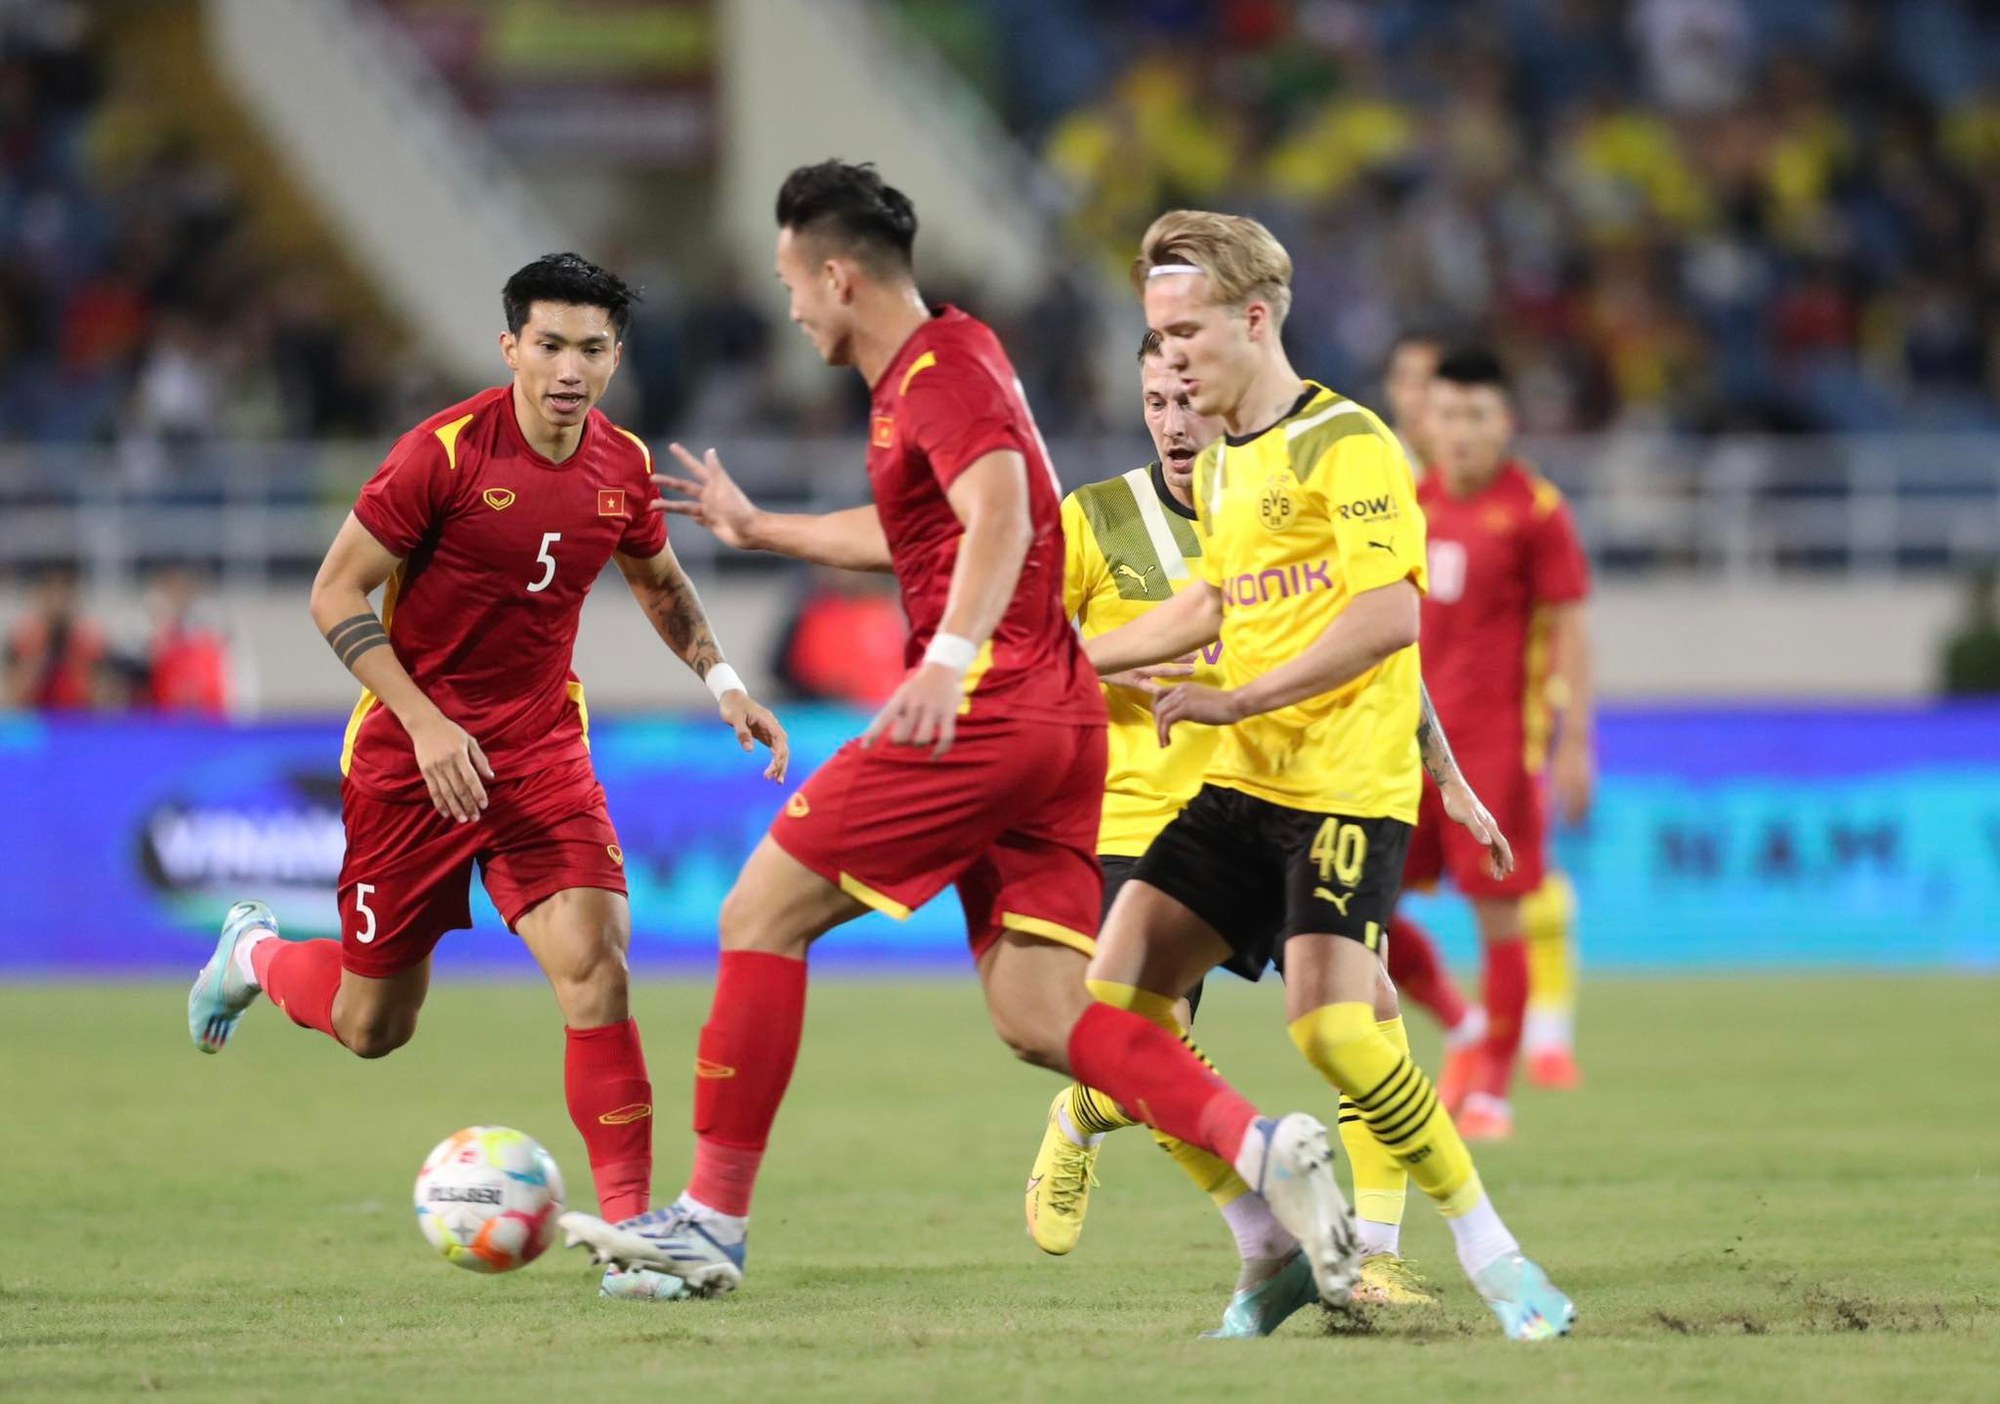 Chiến thắng ngược CLB Dortmund và chiến thắng của tuyển Việt Nam là một trong những trận đấu đáng nhớ nhất của lịch sử bóng đá Việt Nam. Hãy cùng xem hình ảnh về những pha bóng đẹp mắt và các bàn thắng của đội tuyển trong trận đấu này.